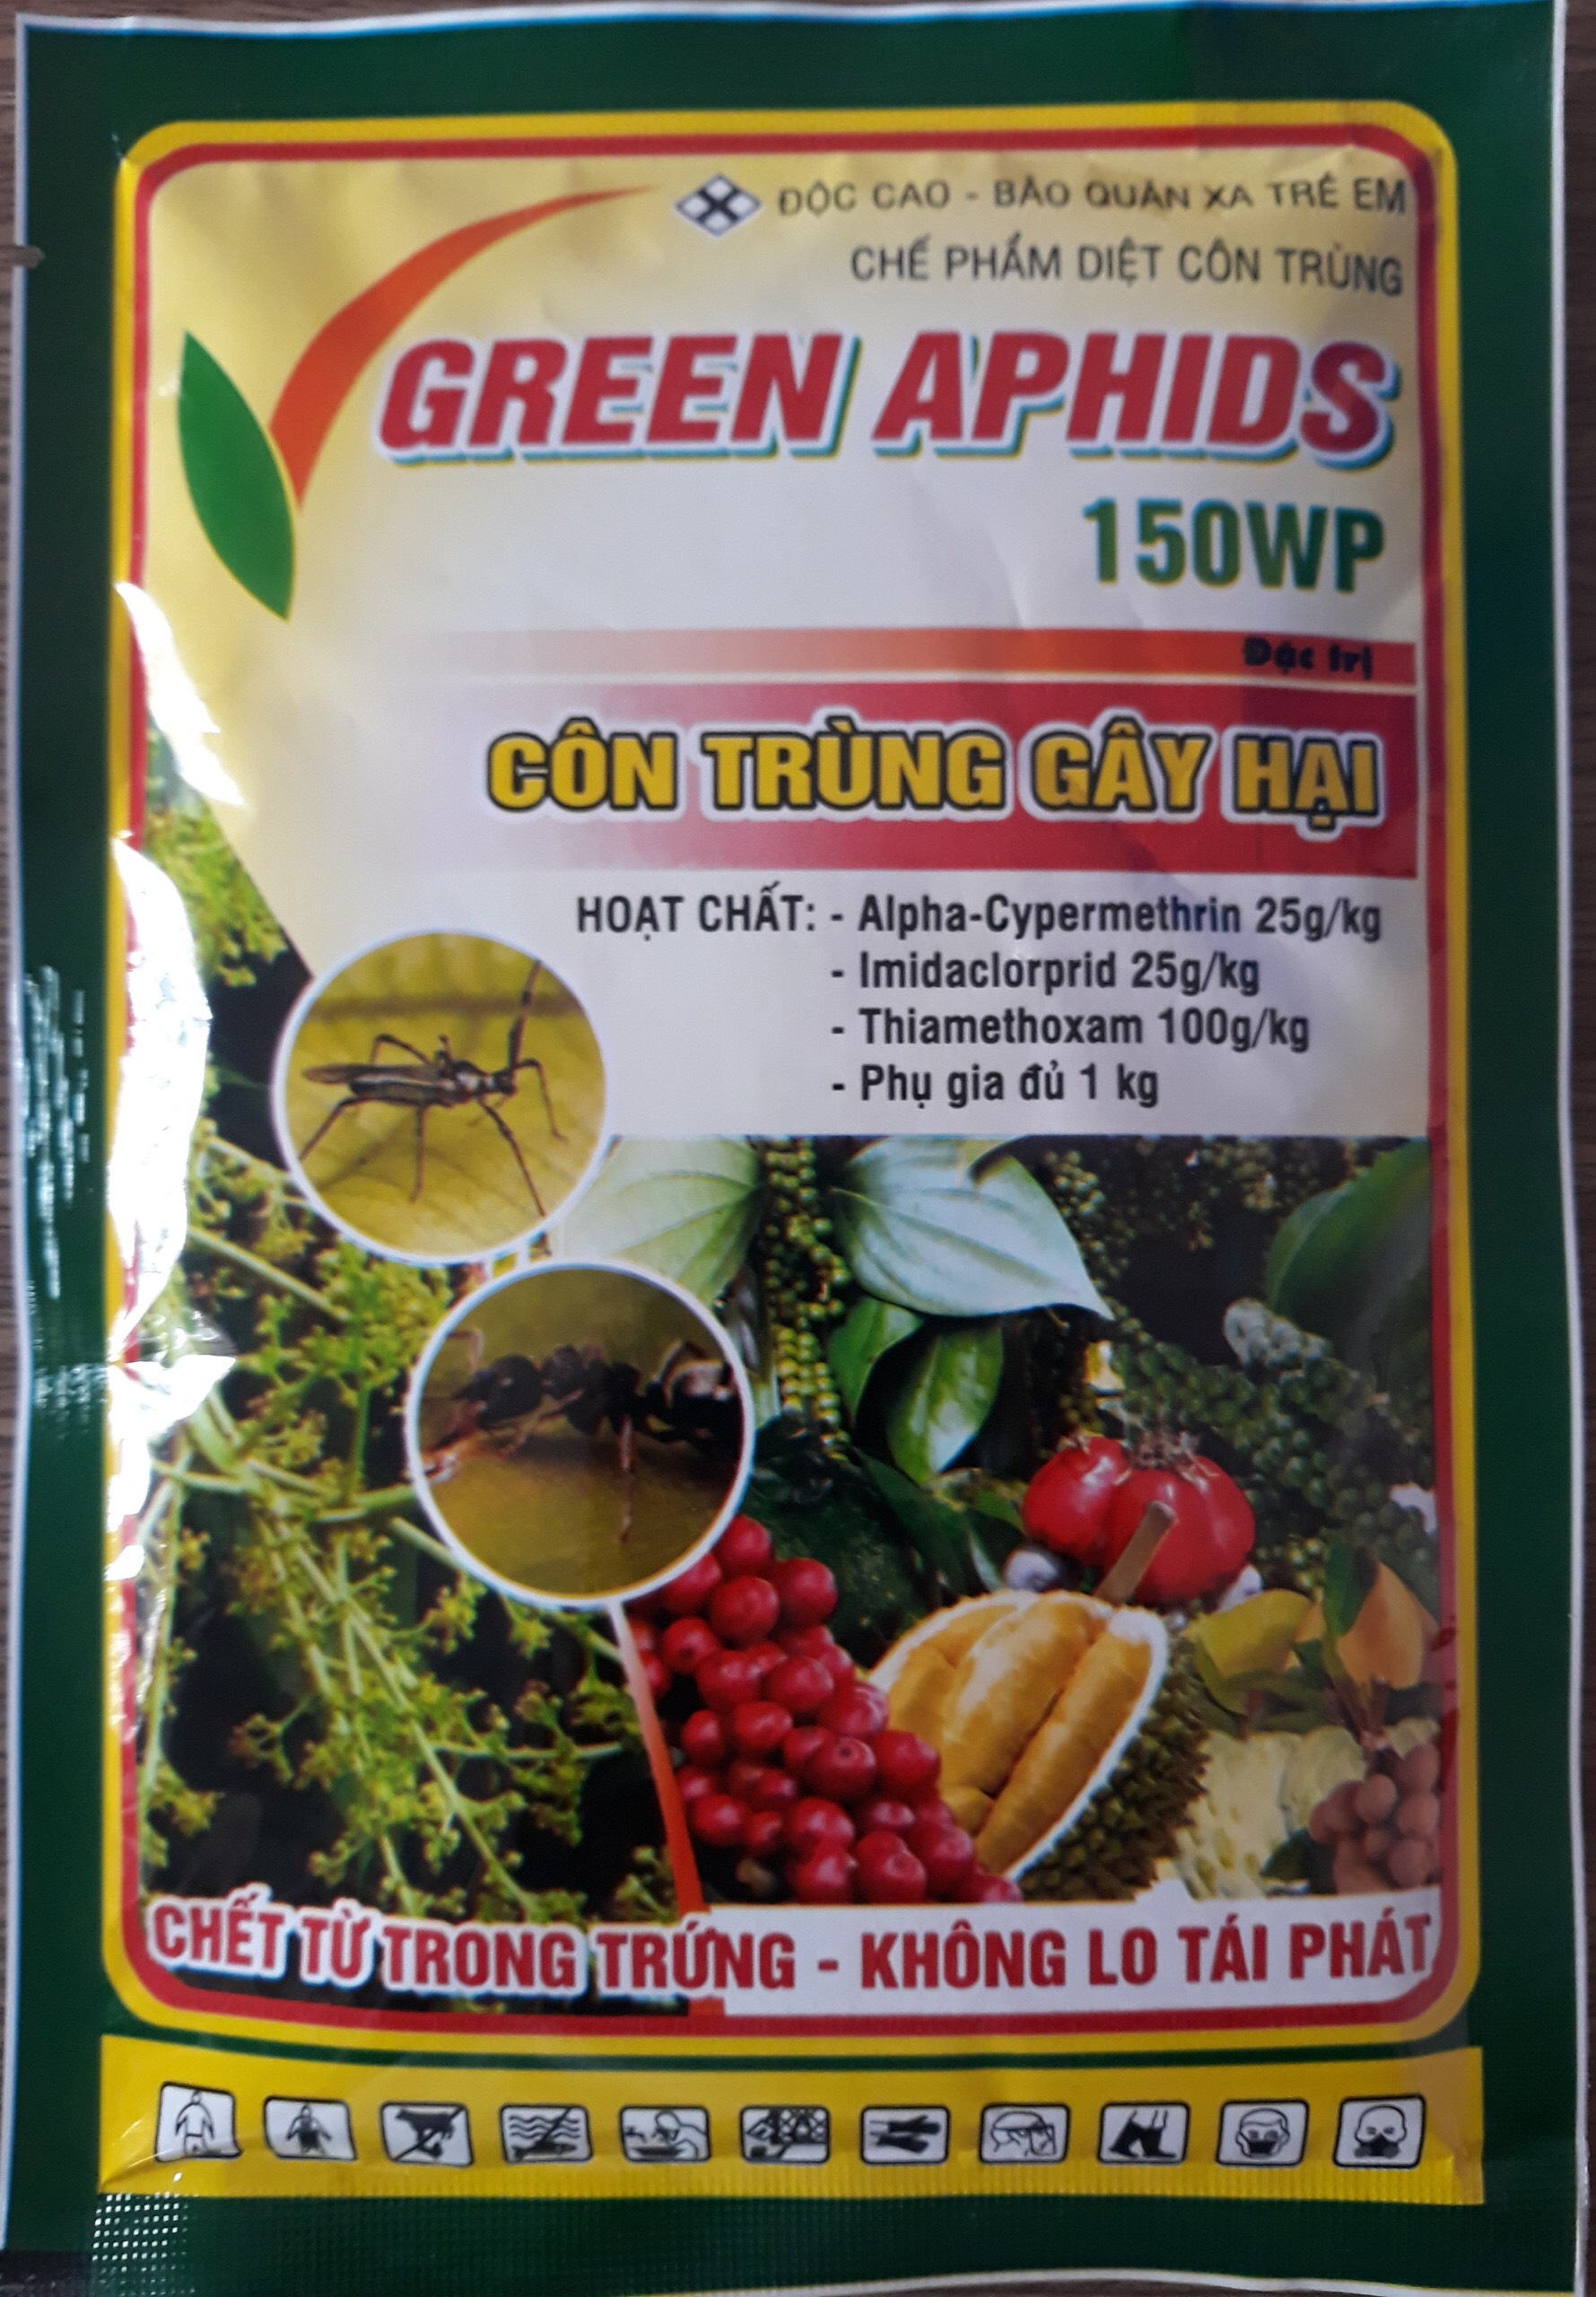 CHẾ PHẨM DIỆT CÔN TRÙNG GREEN APHIDS